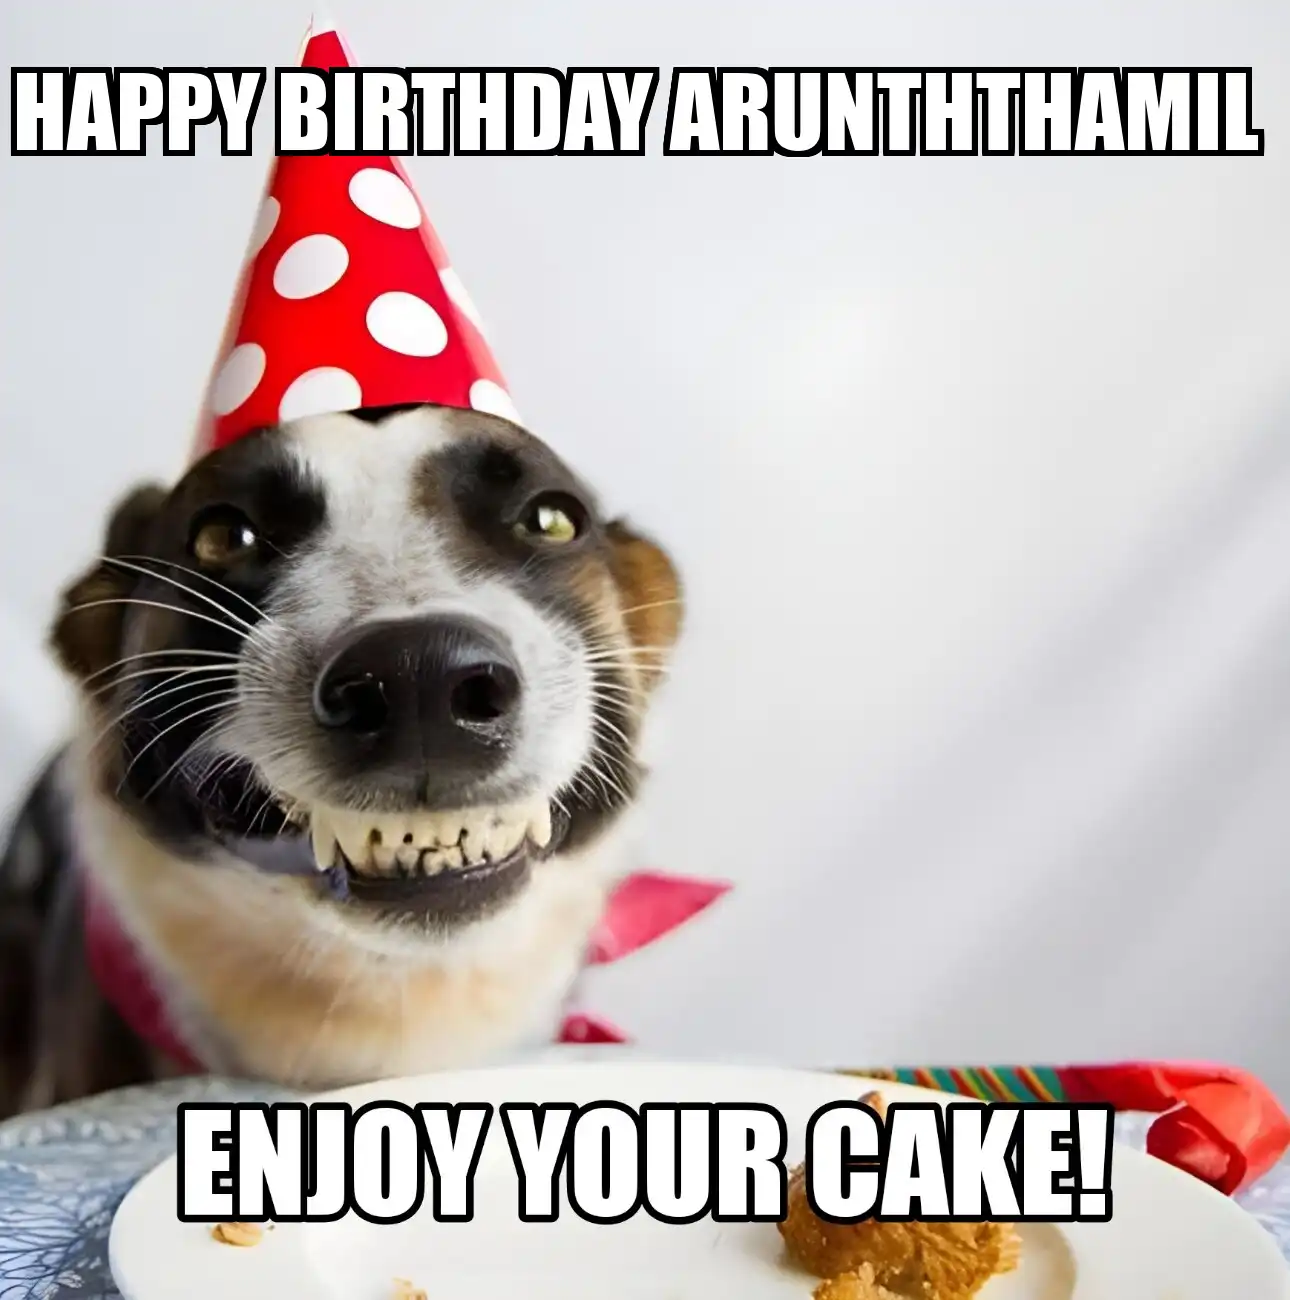 Happy Birthday Arunththamil Enjoy Your Cake Dog Meme